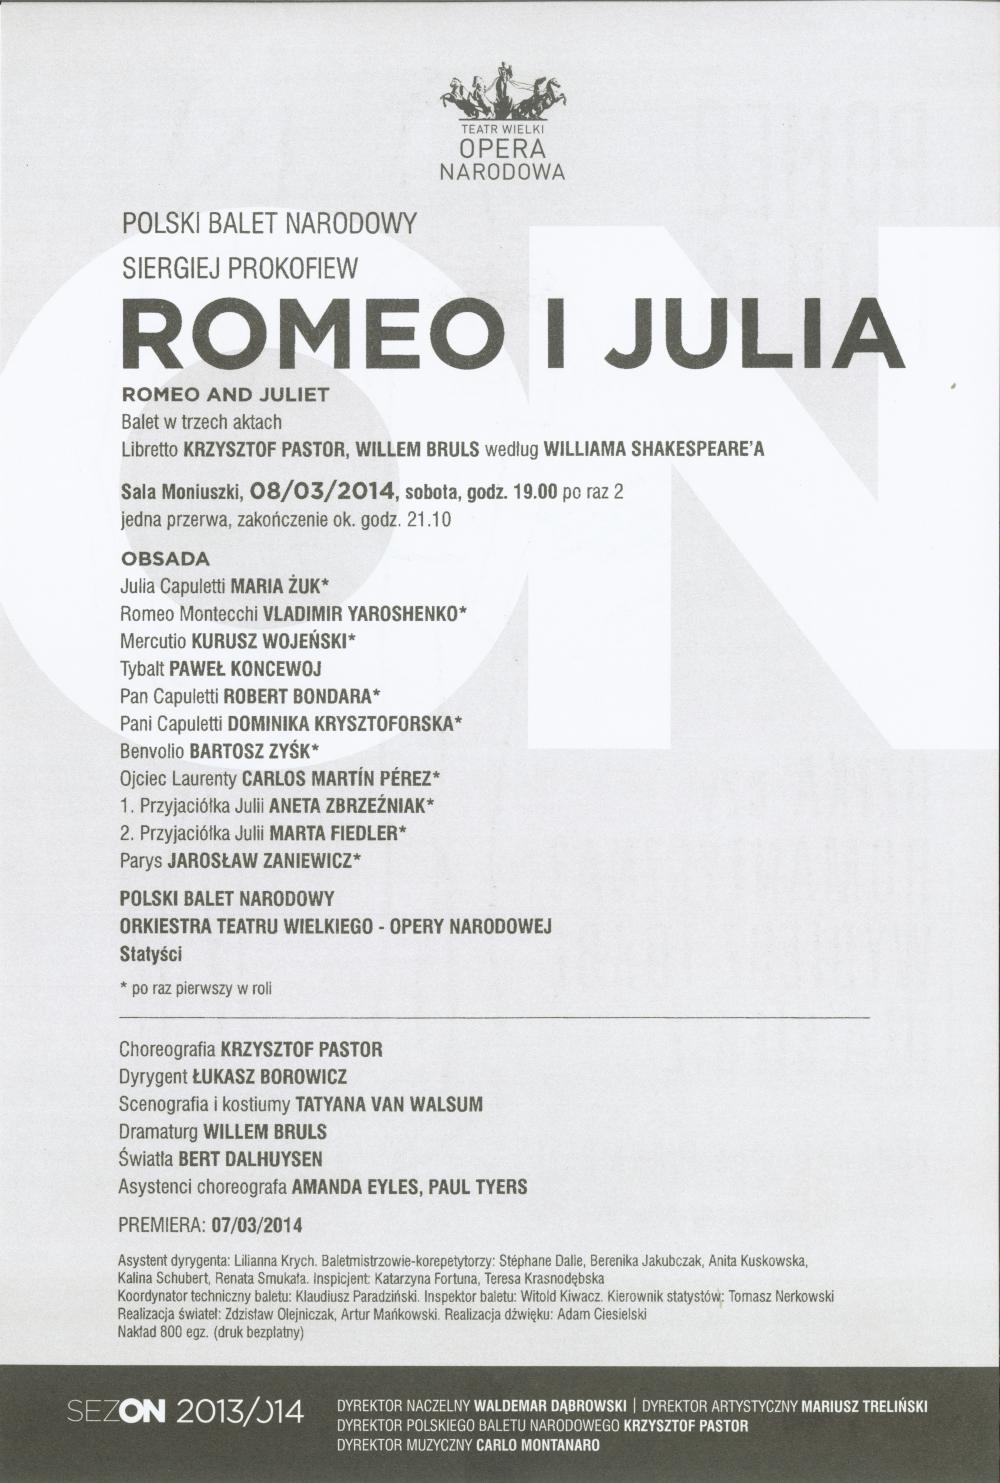 Wkładka obsadowa "Romeo i Julia" Siergiej Prokofiew / Krzysztof Pastor, 2014-03-08